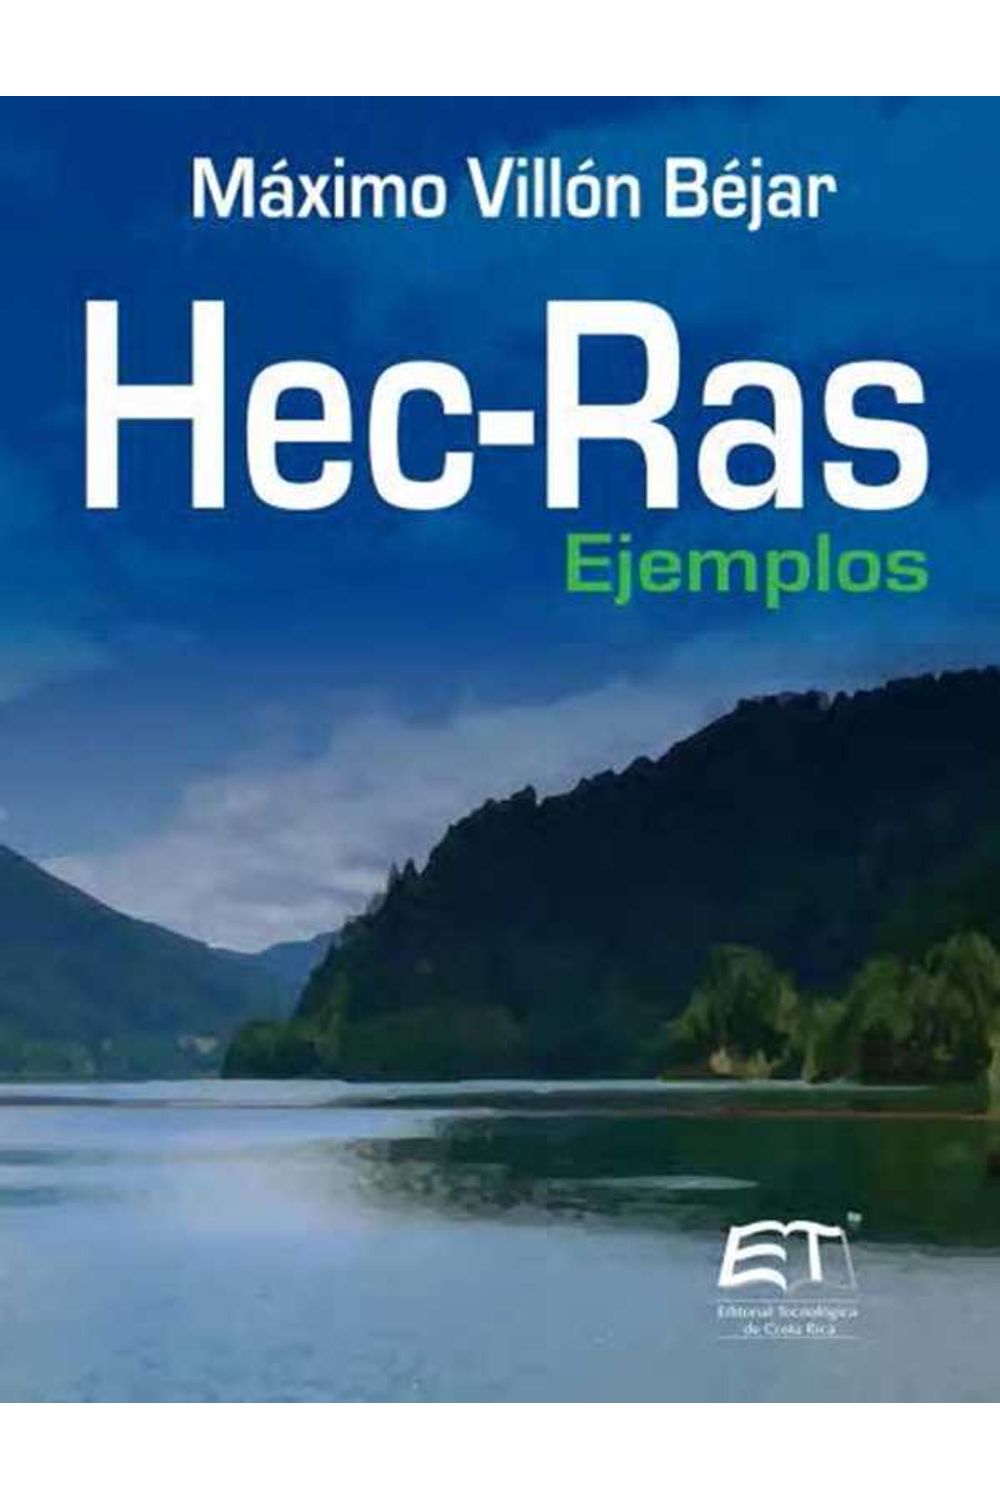 bw-hecras-editorial-tecnologica-de-costa-rica-9789977663203